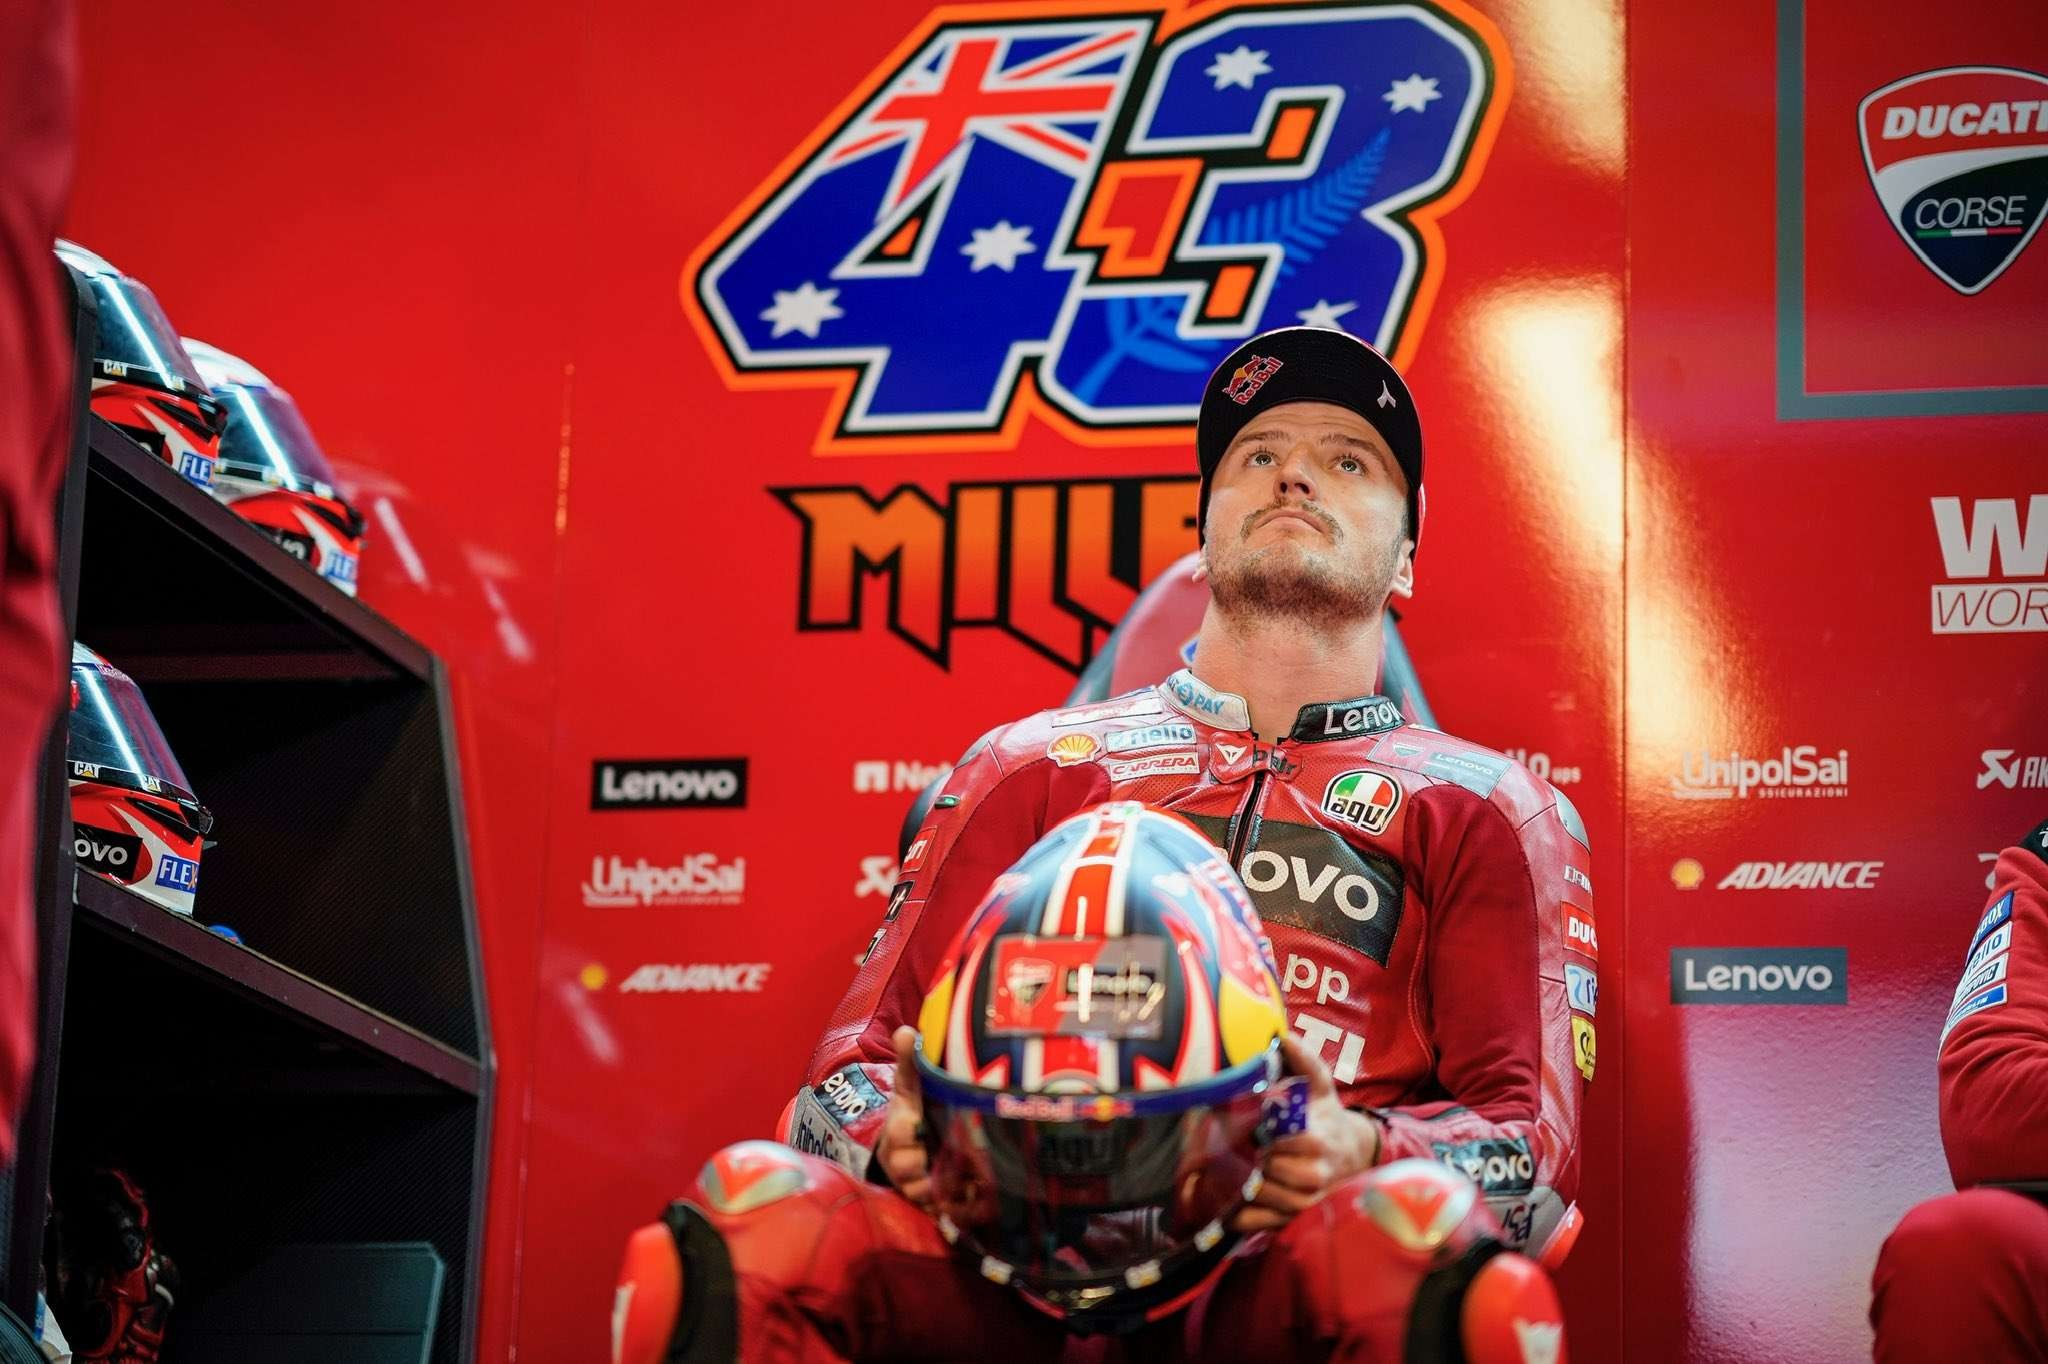 Jack Miller merasa Ducati telah membawanya ke fase yang lebih tinggi dalam kariernya di MotoGP. (Foto: Twitter/@jackmilleraus)